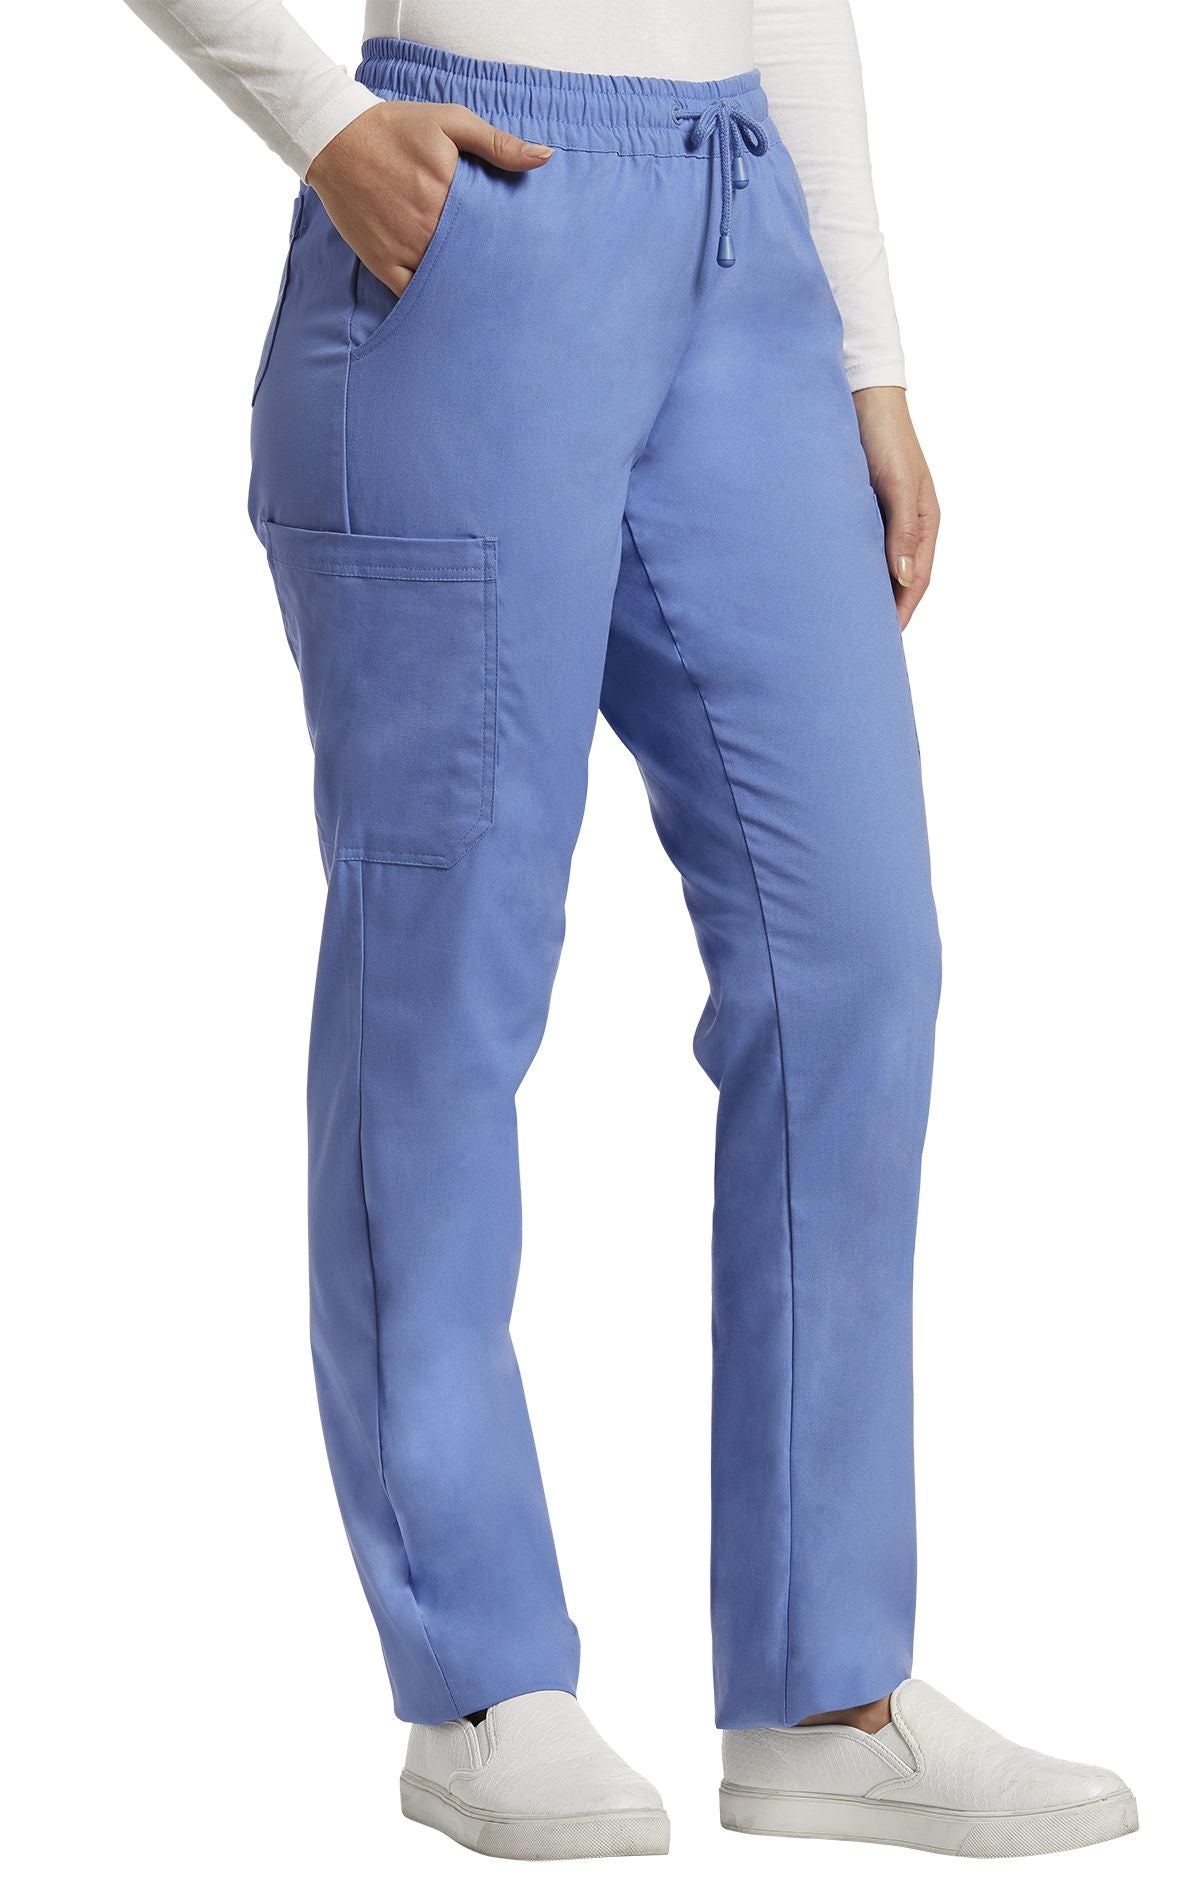 Pantalon médical 6 poches couleur ciel  de White cross 304